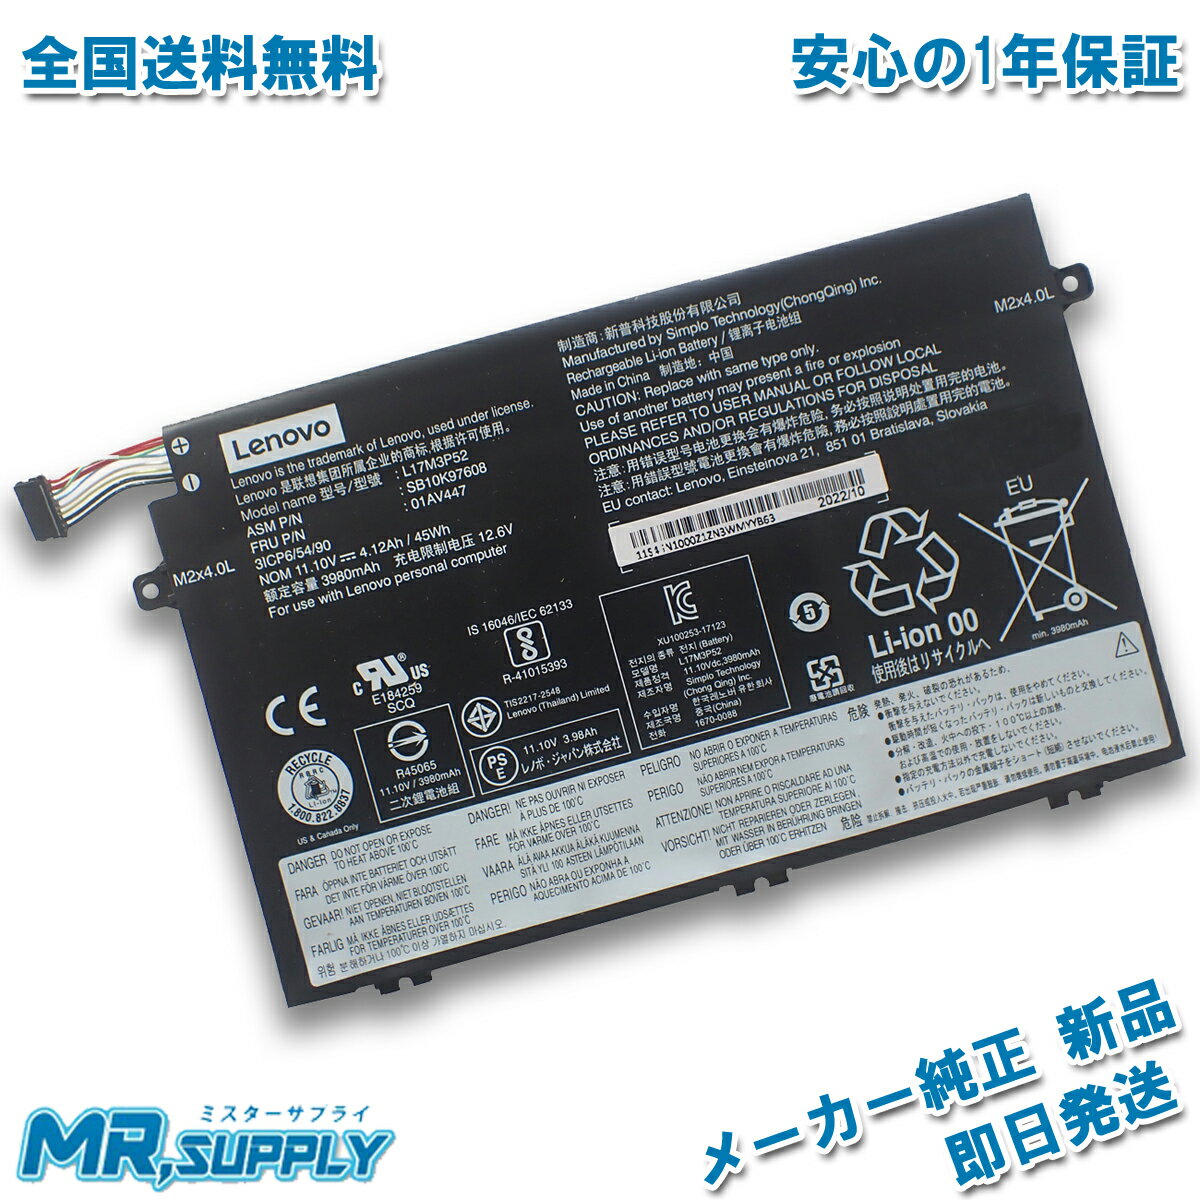 【純正】S4219 7.4V 35.52Wh medion ノート PC ノートパソコン 純正 交換バッテリー